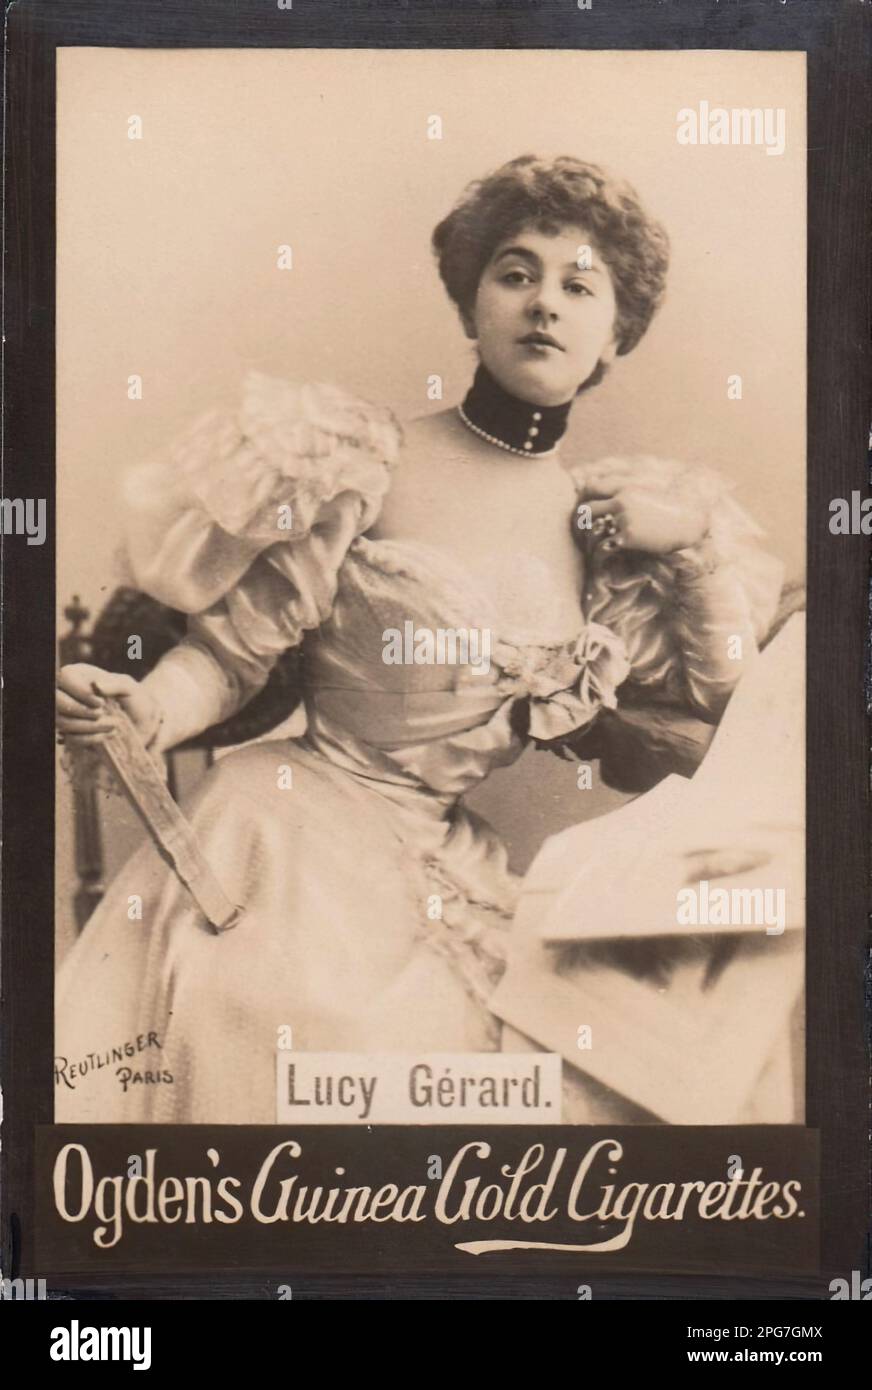 Porträt von Lucy Gérard - Oldtimer-Zigarettenkarte aus der viktorianischen Epoche Stockfoto